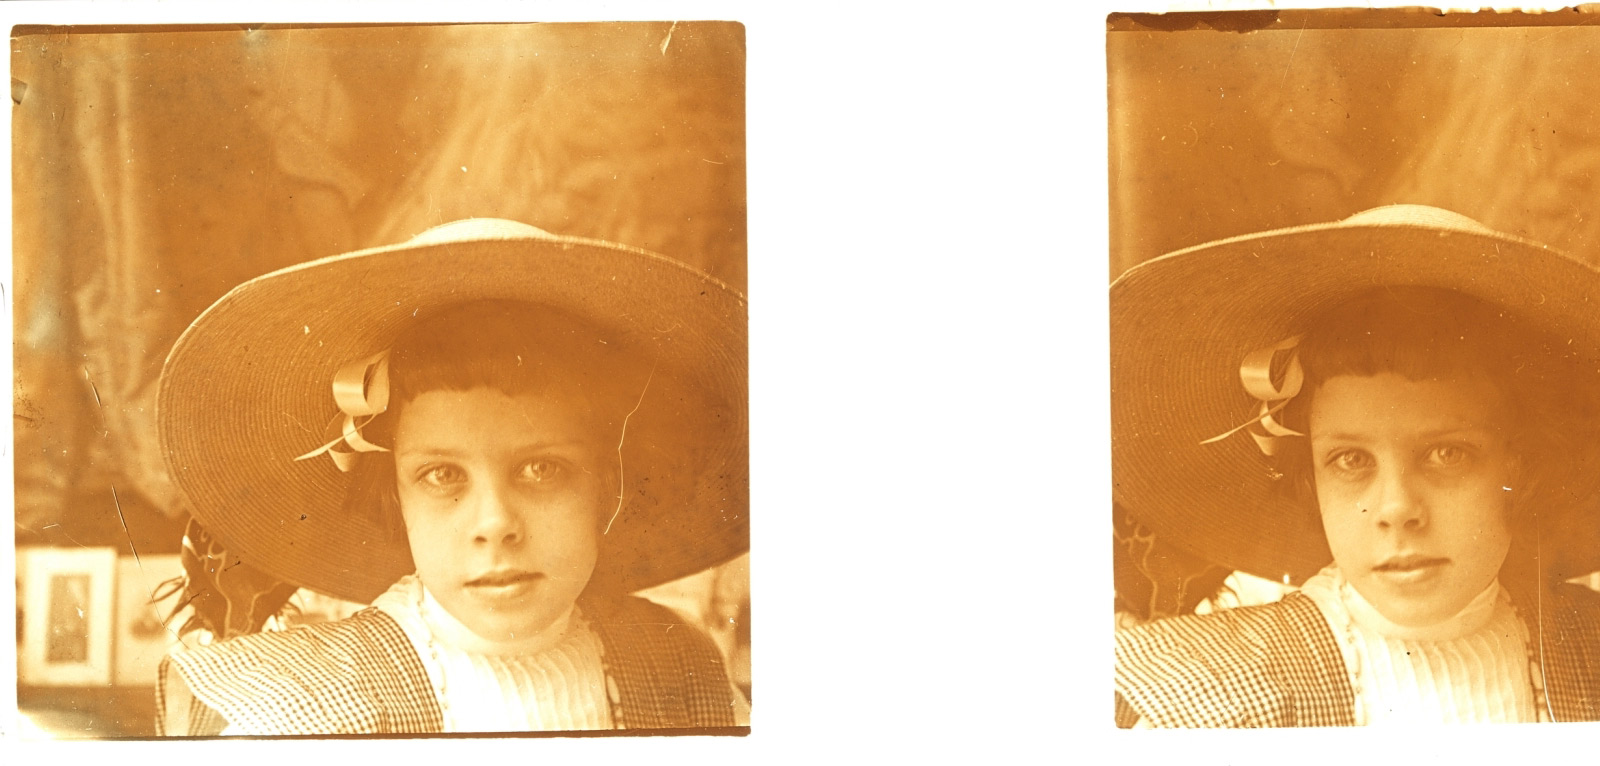 Imágenes de la infancia y la adolescencia femeninas en torno a 1900